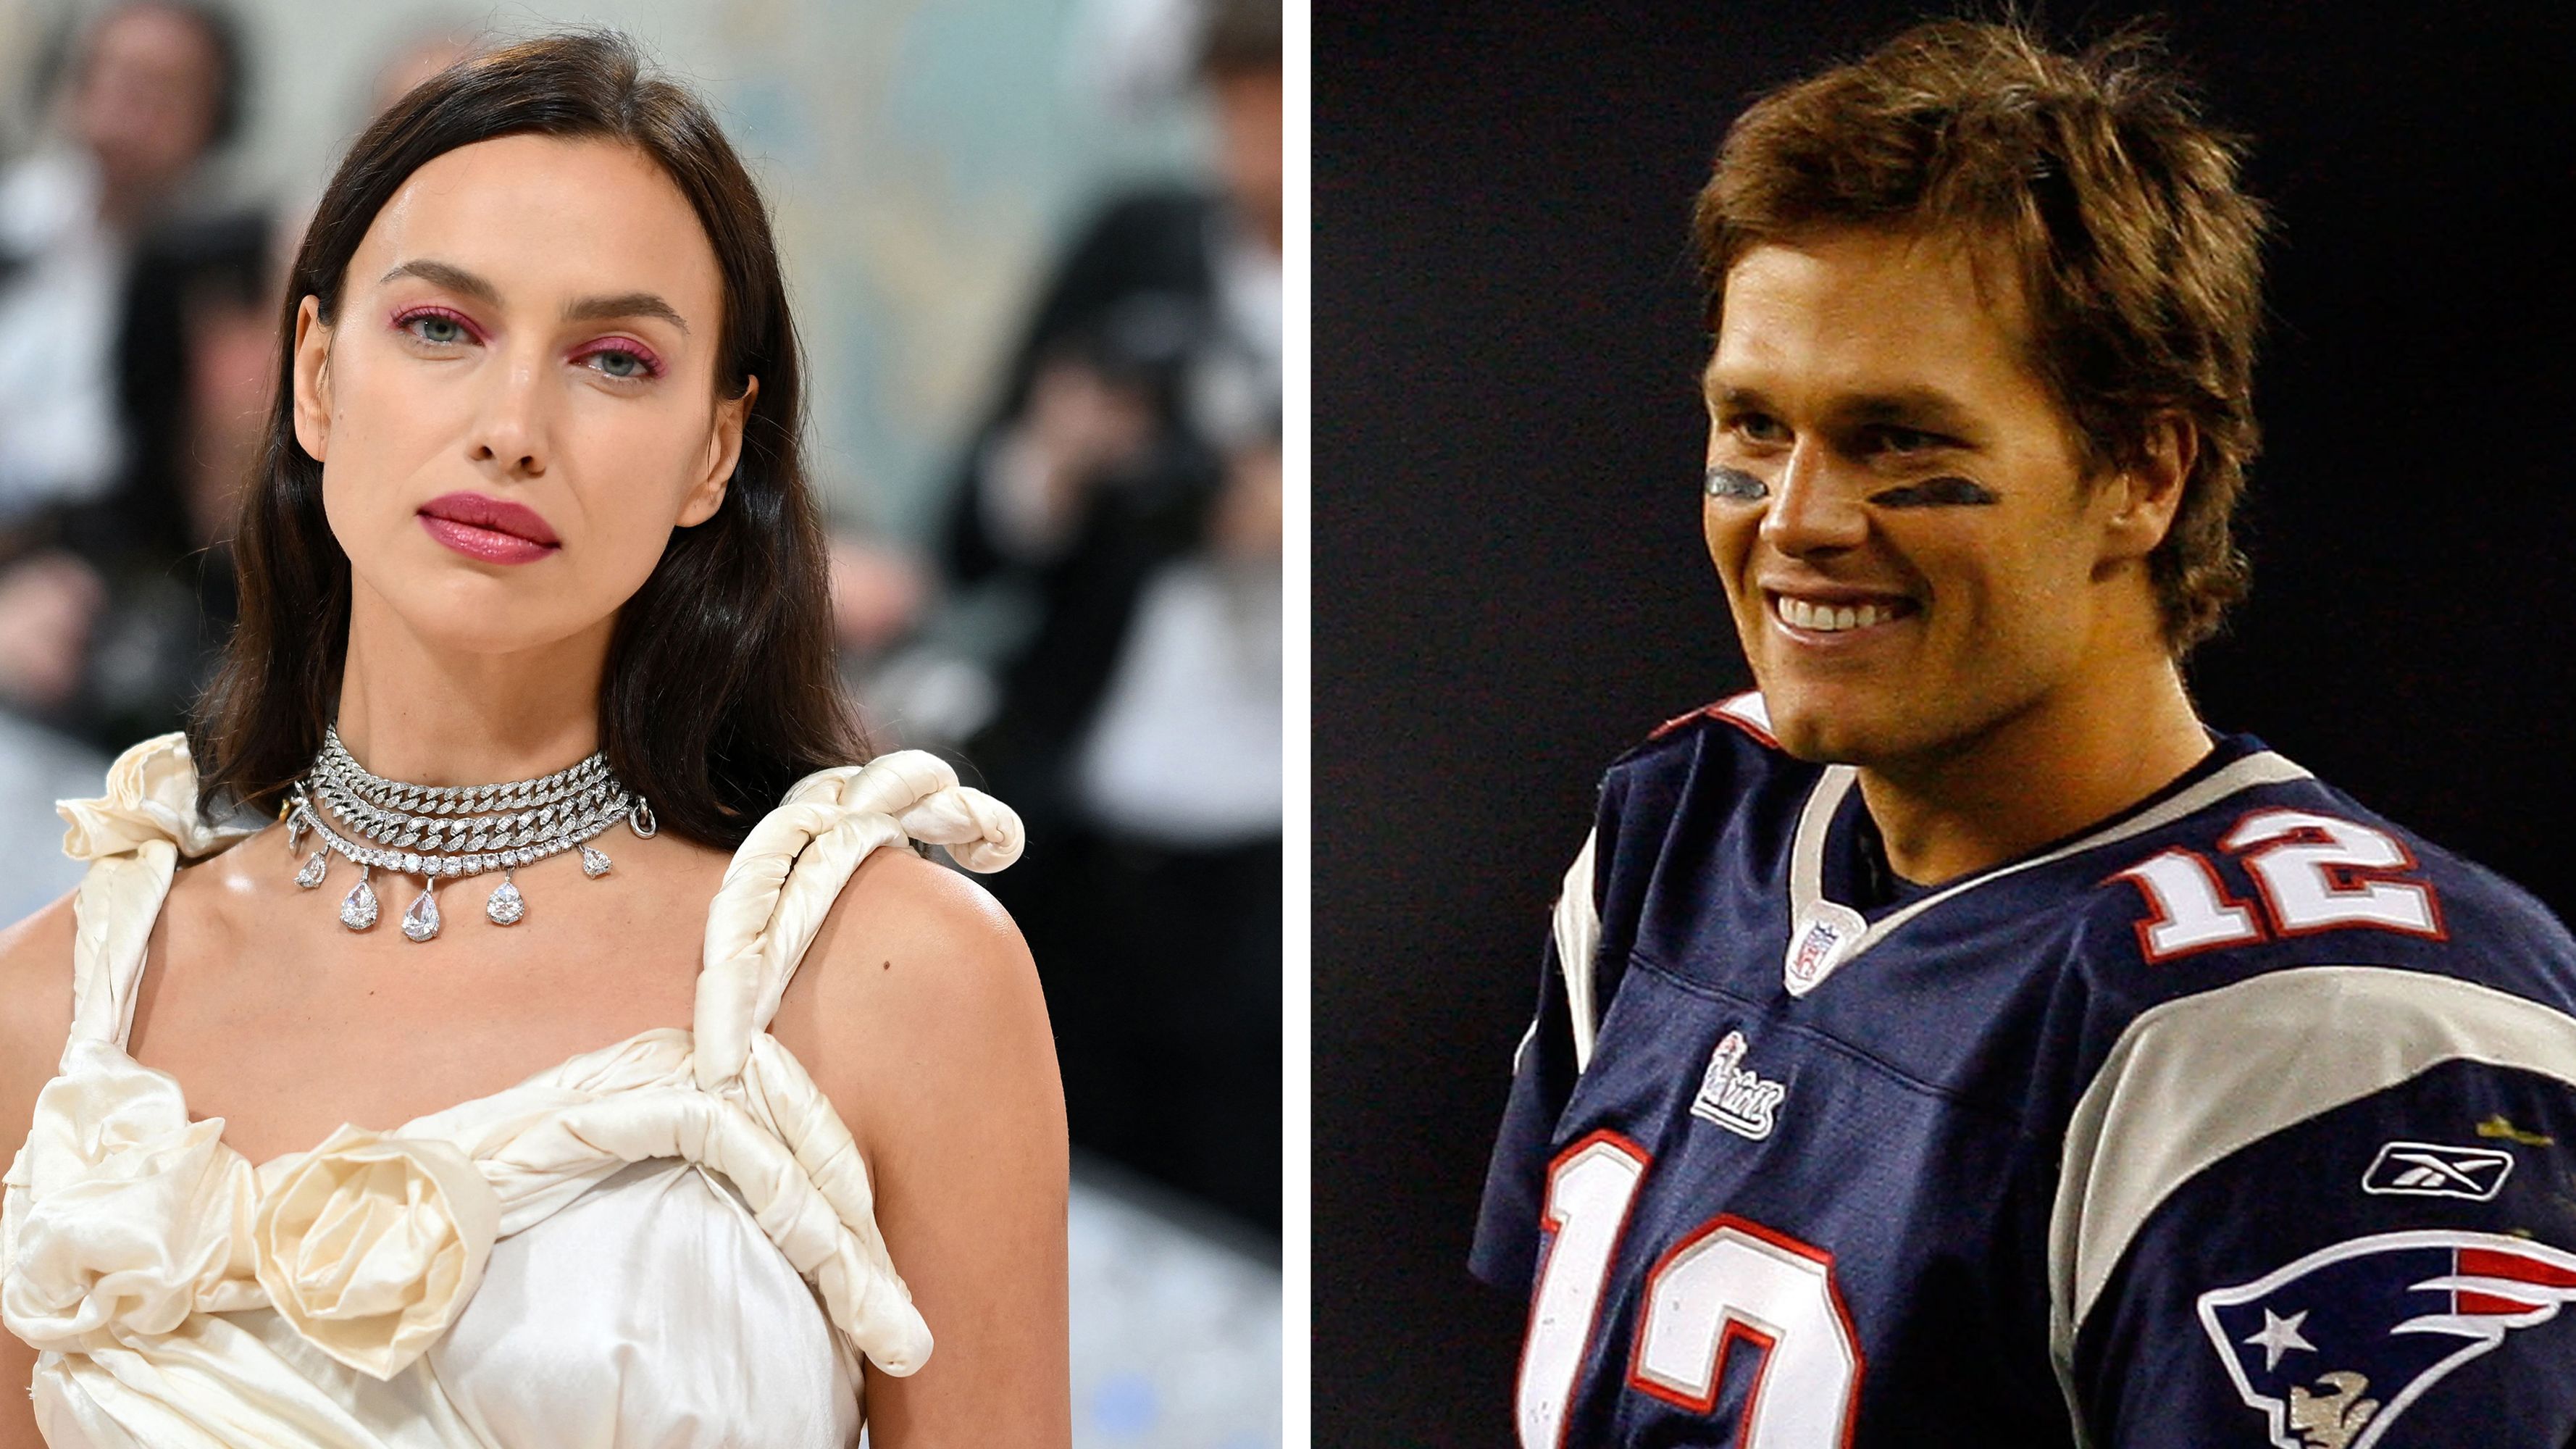 Irina Shayk and Tom Brady's Relationship Timeline